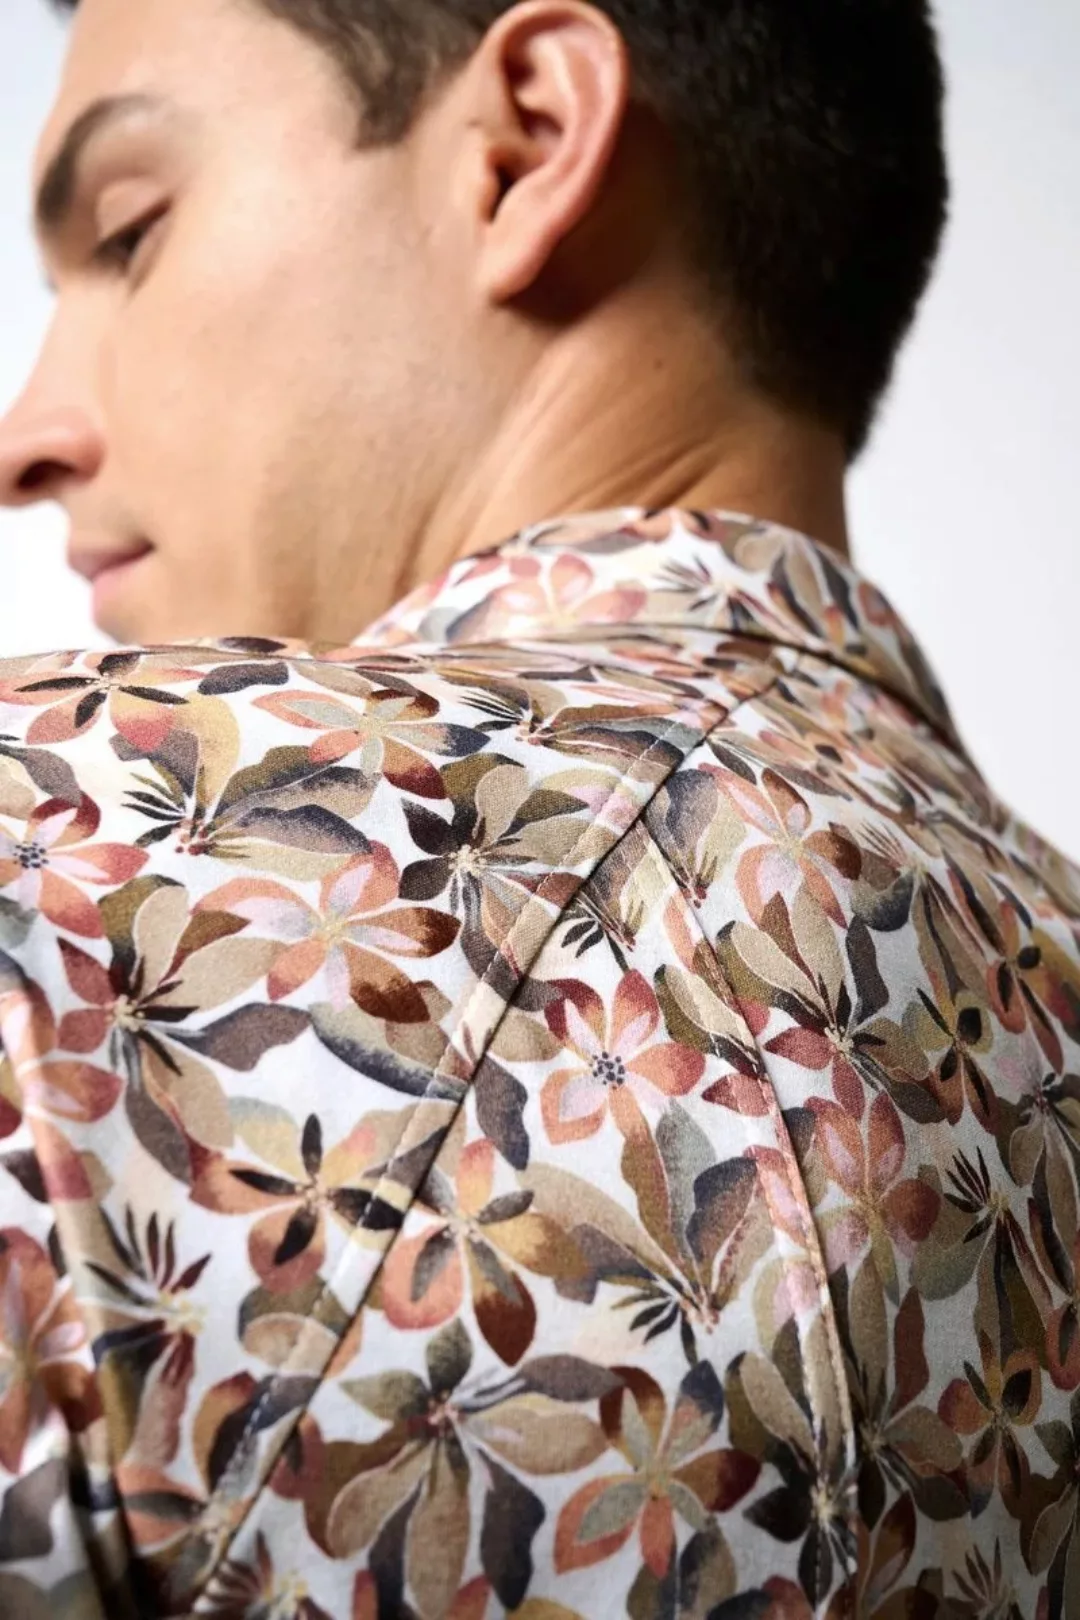 Desoto Short Sleeve Jersey Hemd Druck Beige  - Größe XXL günstig online kaufen